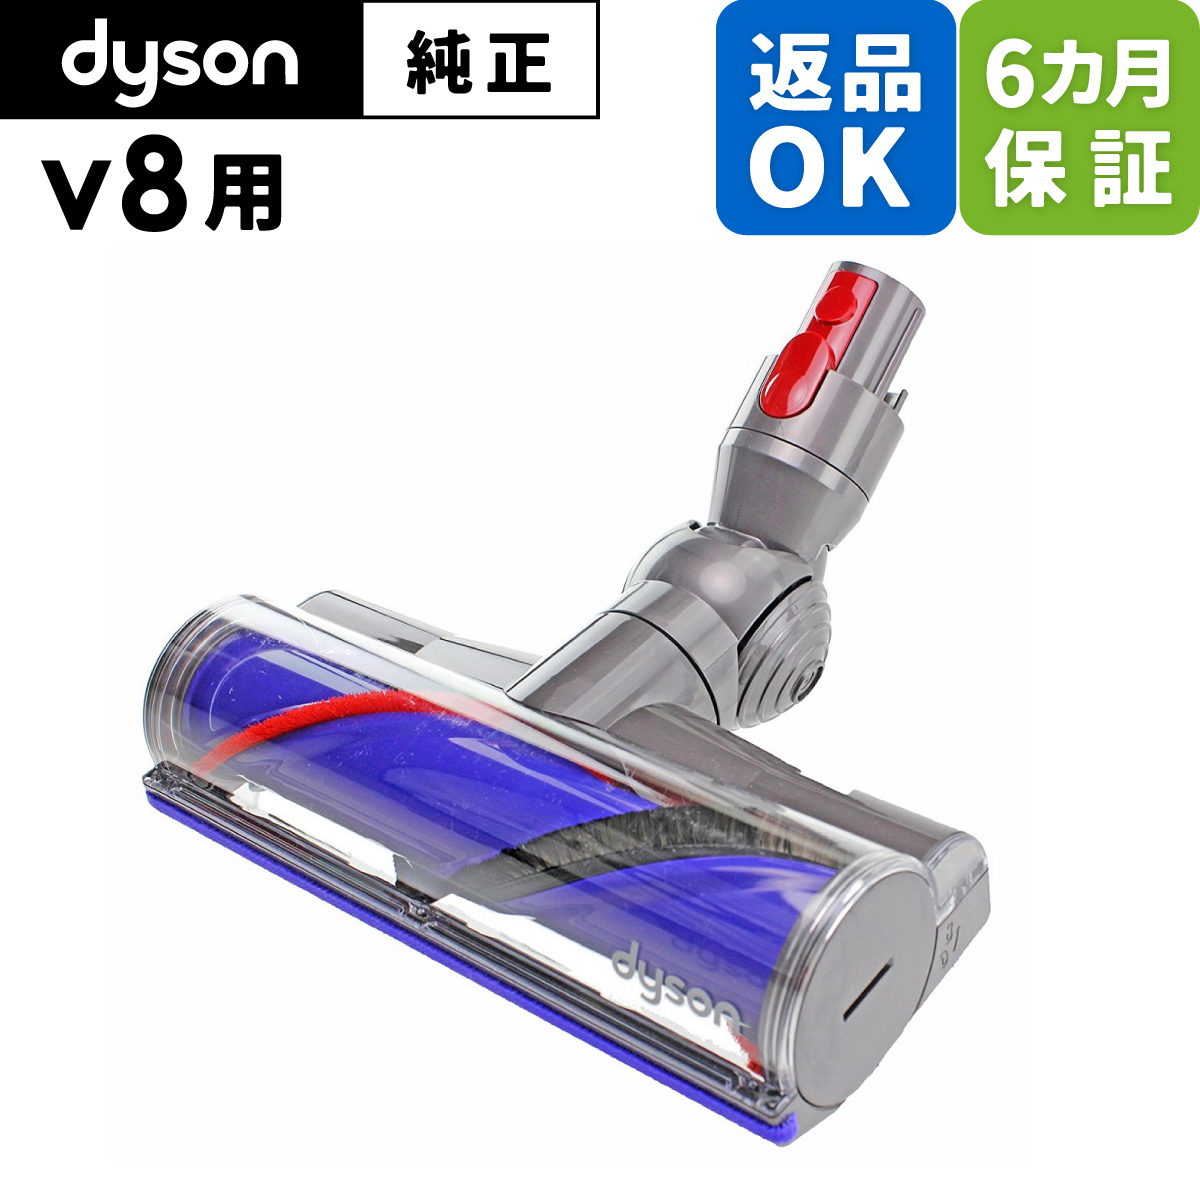 返品OK 6カ月保証 Dyson ダイソン 純正 パーツ ダイレクトドライブクリーナーヘッド 適合 モデル 型式 V8 ※slim対象外